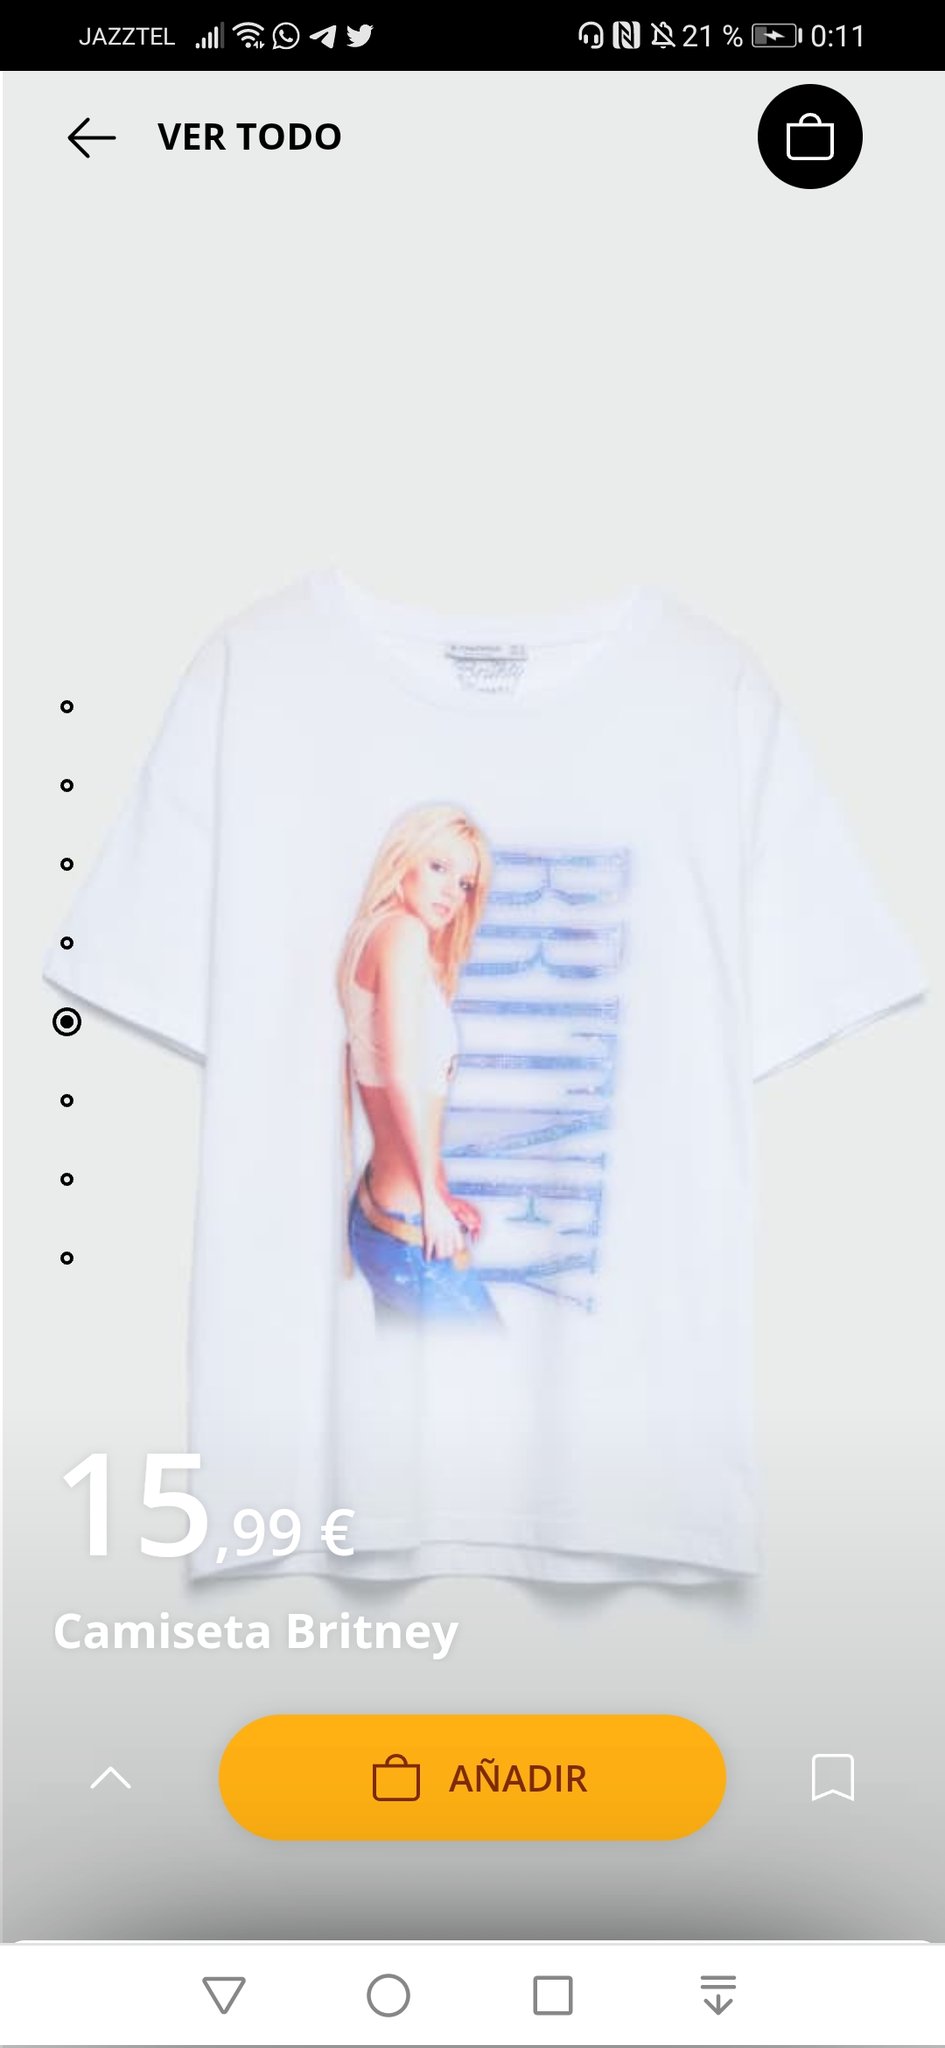 operador Montañas climáticas esencia Britney Spears Spain 🌹🚀| Fan Page on Twitter: "¡NOVEDAD! 💥 La tienda  @stradivarius ha puesto a la venta una nueva camiseta de la era "Britney".  Aparentemente no es exclusiva de la web